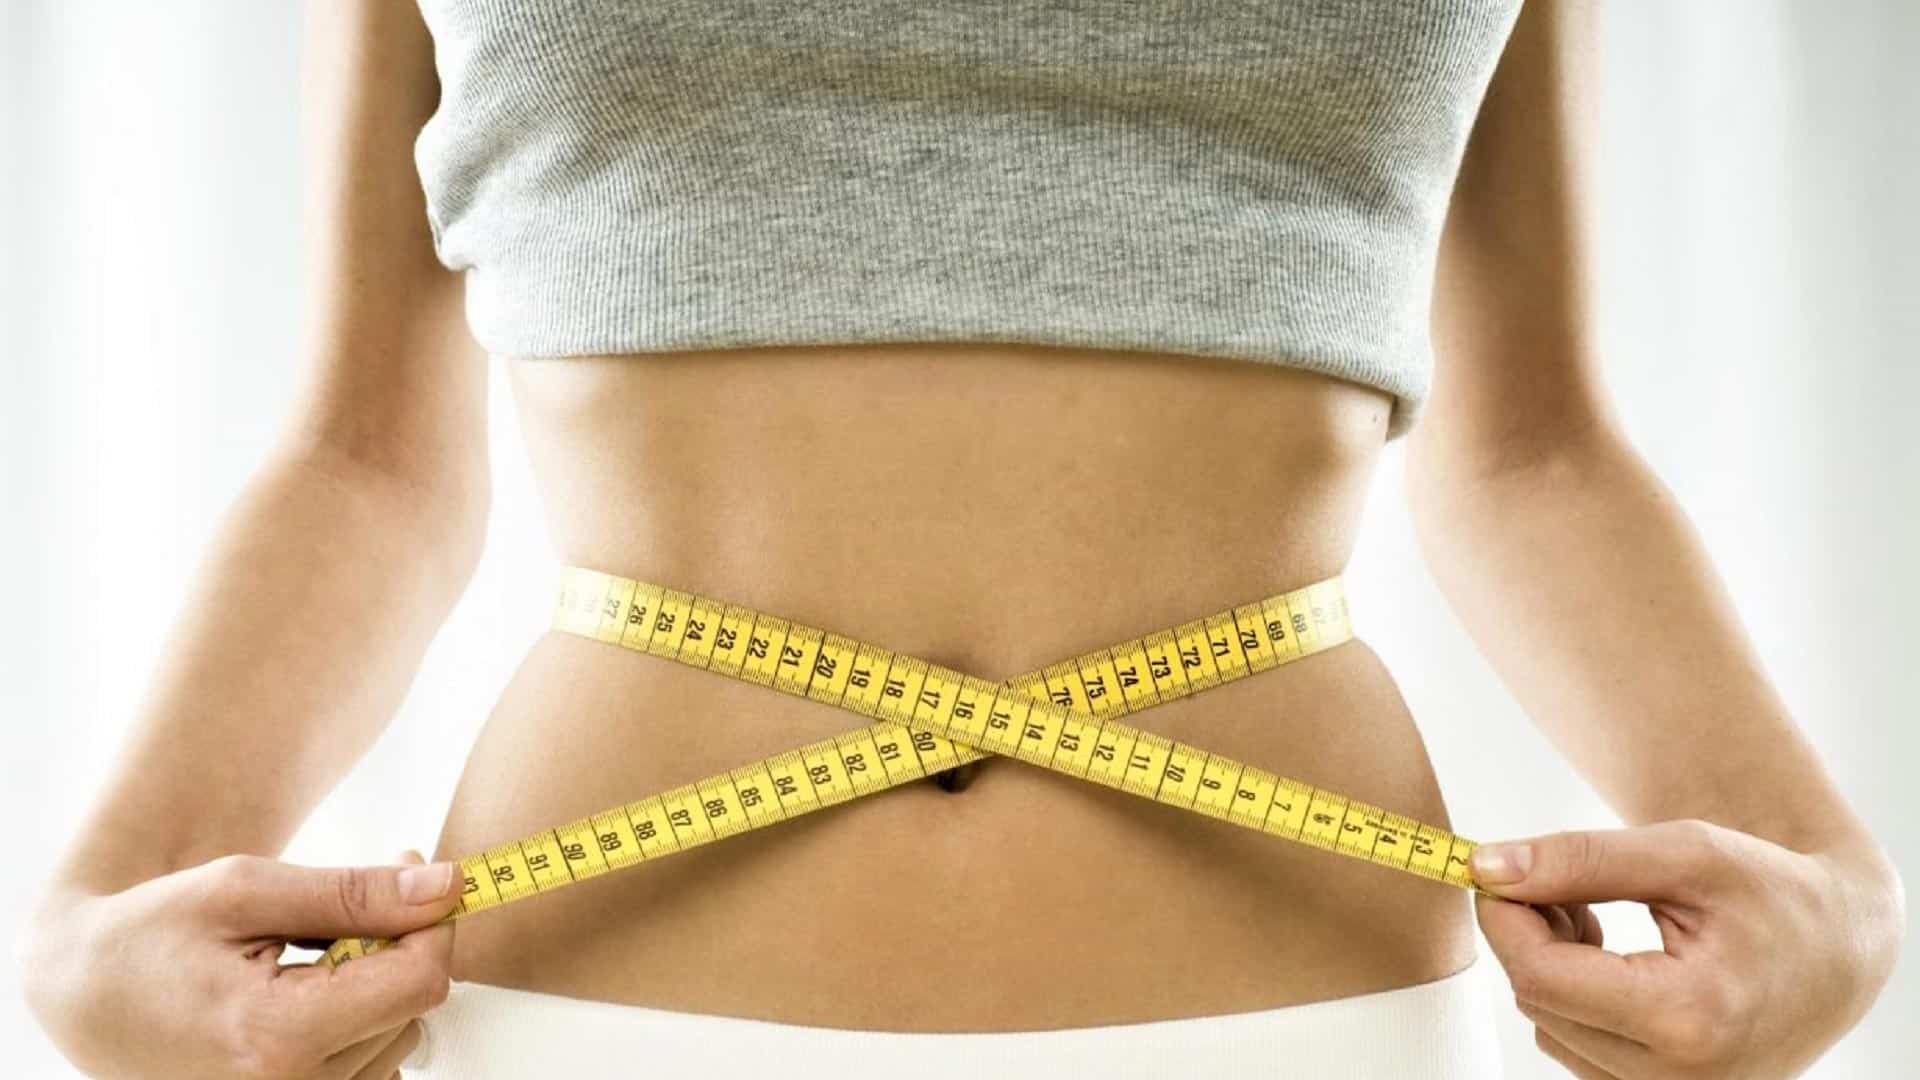 Οι ενδοκρινολόγοι λένε «ναι» στη χρήση των νέων φαρμάκων για την απώλεια βάρους